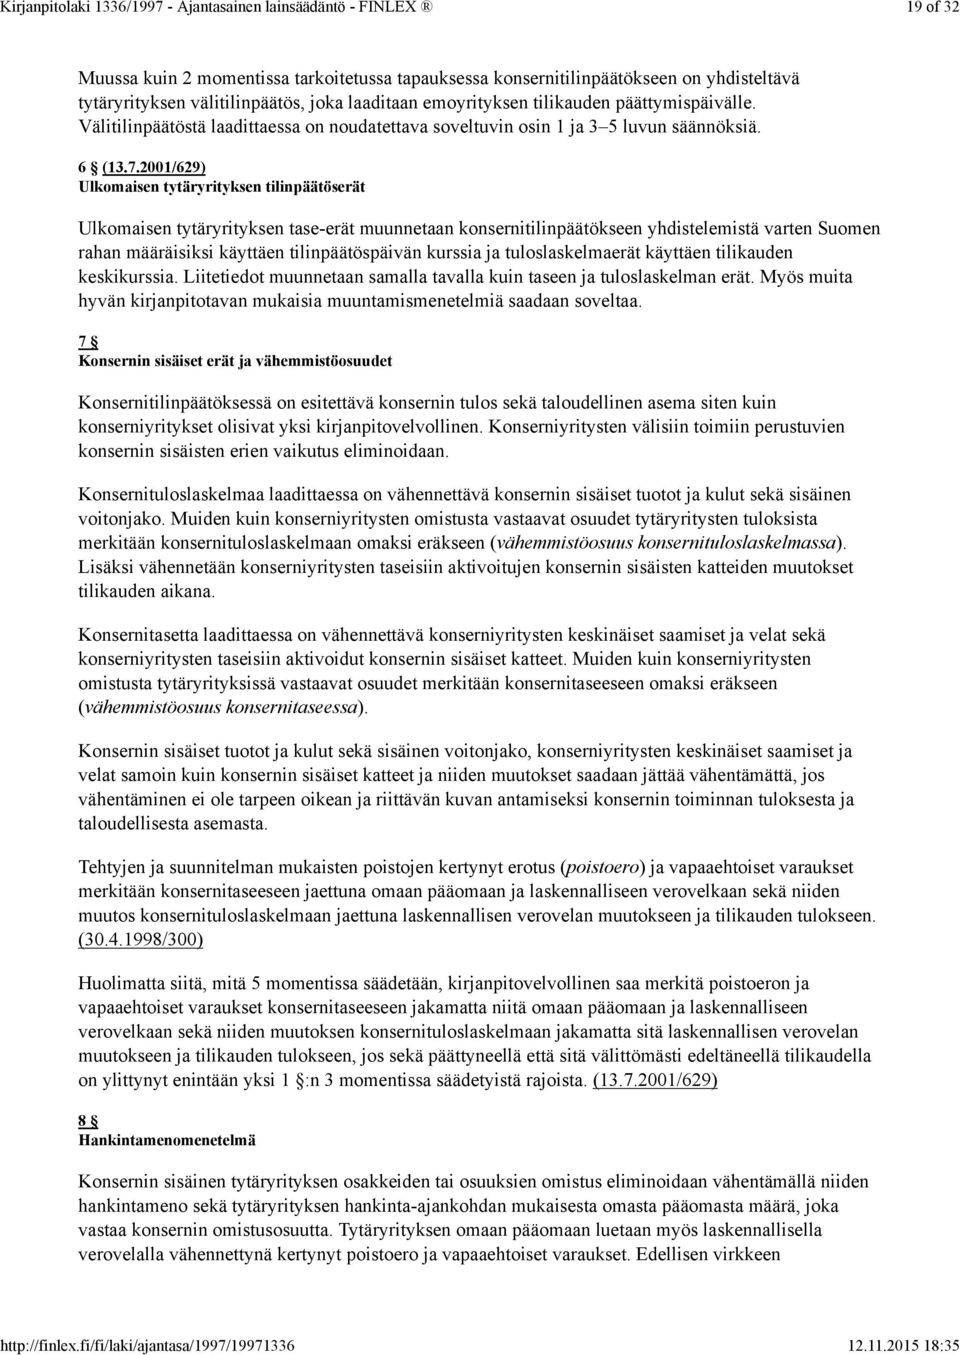 2001/629) Ulkomaisen tytäryrityksen tilinpäätöserät Ulkomaisen tytäryrityksen tase-erät muunnetaan konsernitilinpäätökseen yhdistelemistä varten Suomen rahan määräisiksi käyttäen tilinpäätöspäivän